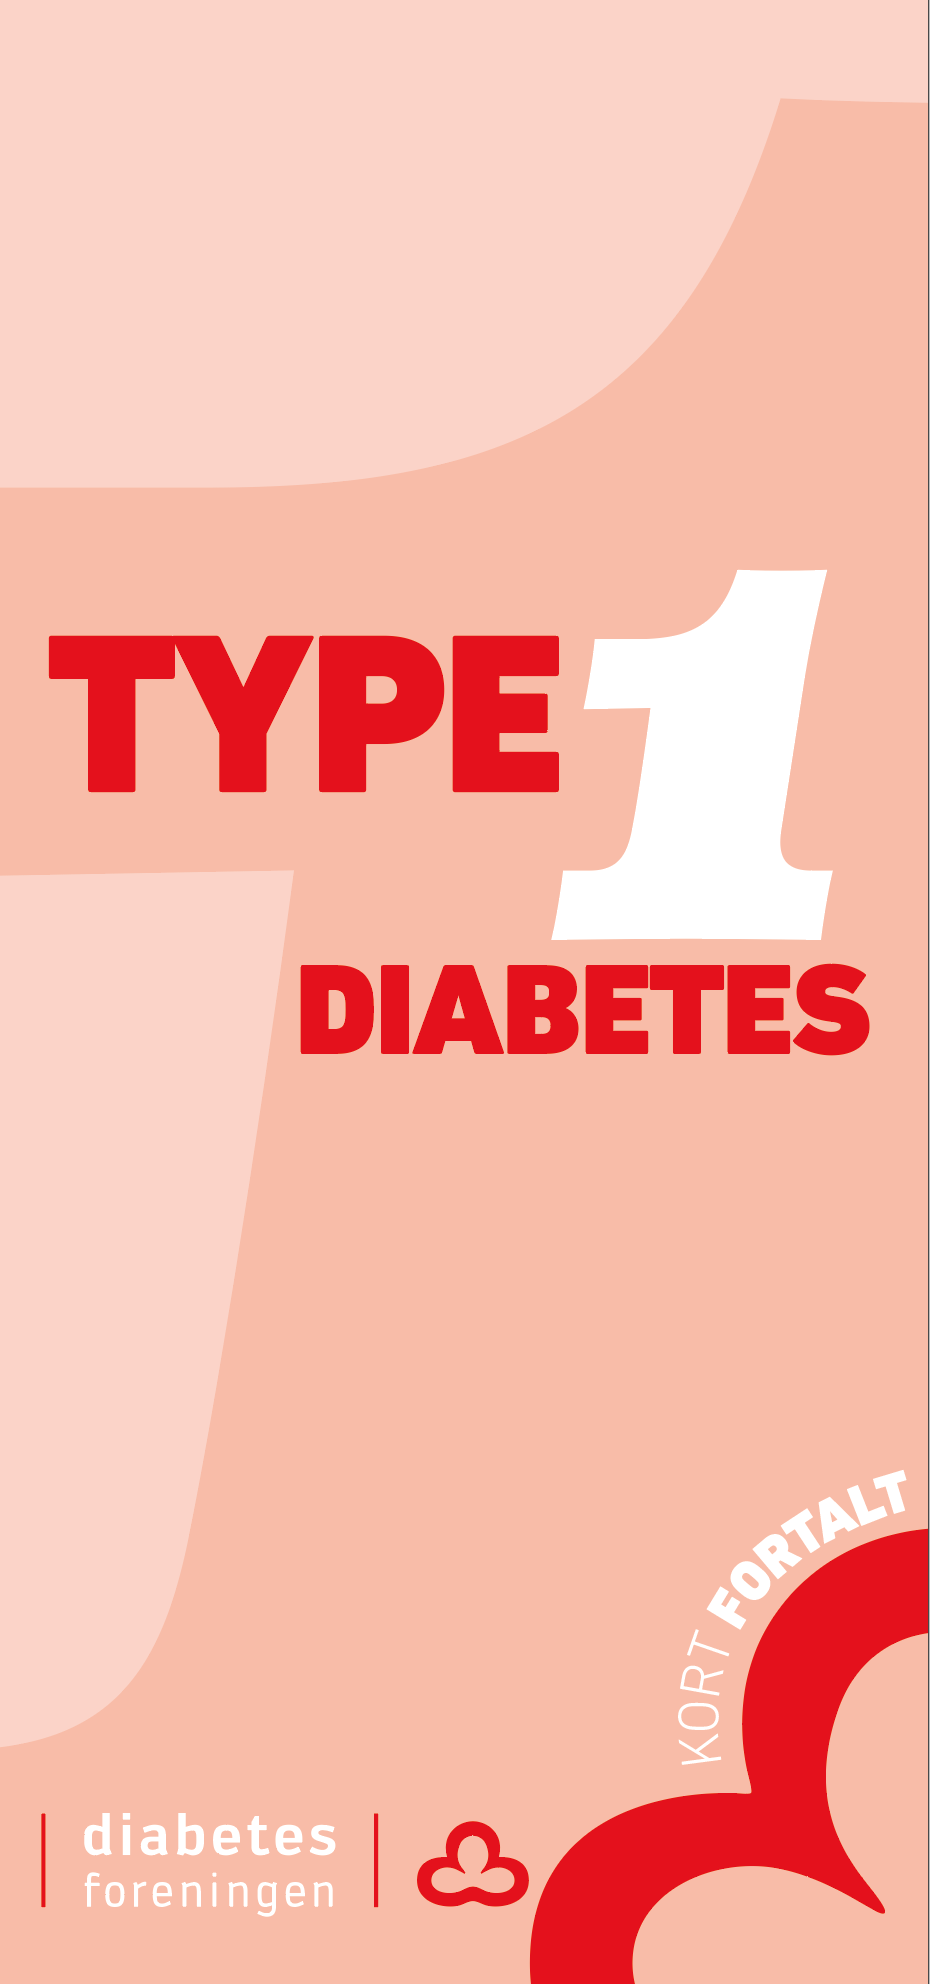 Kort fortalt - Type-1 diabetes